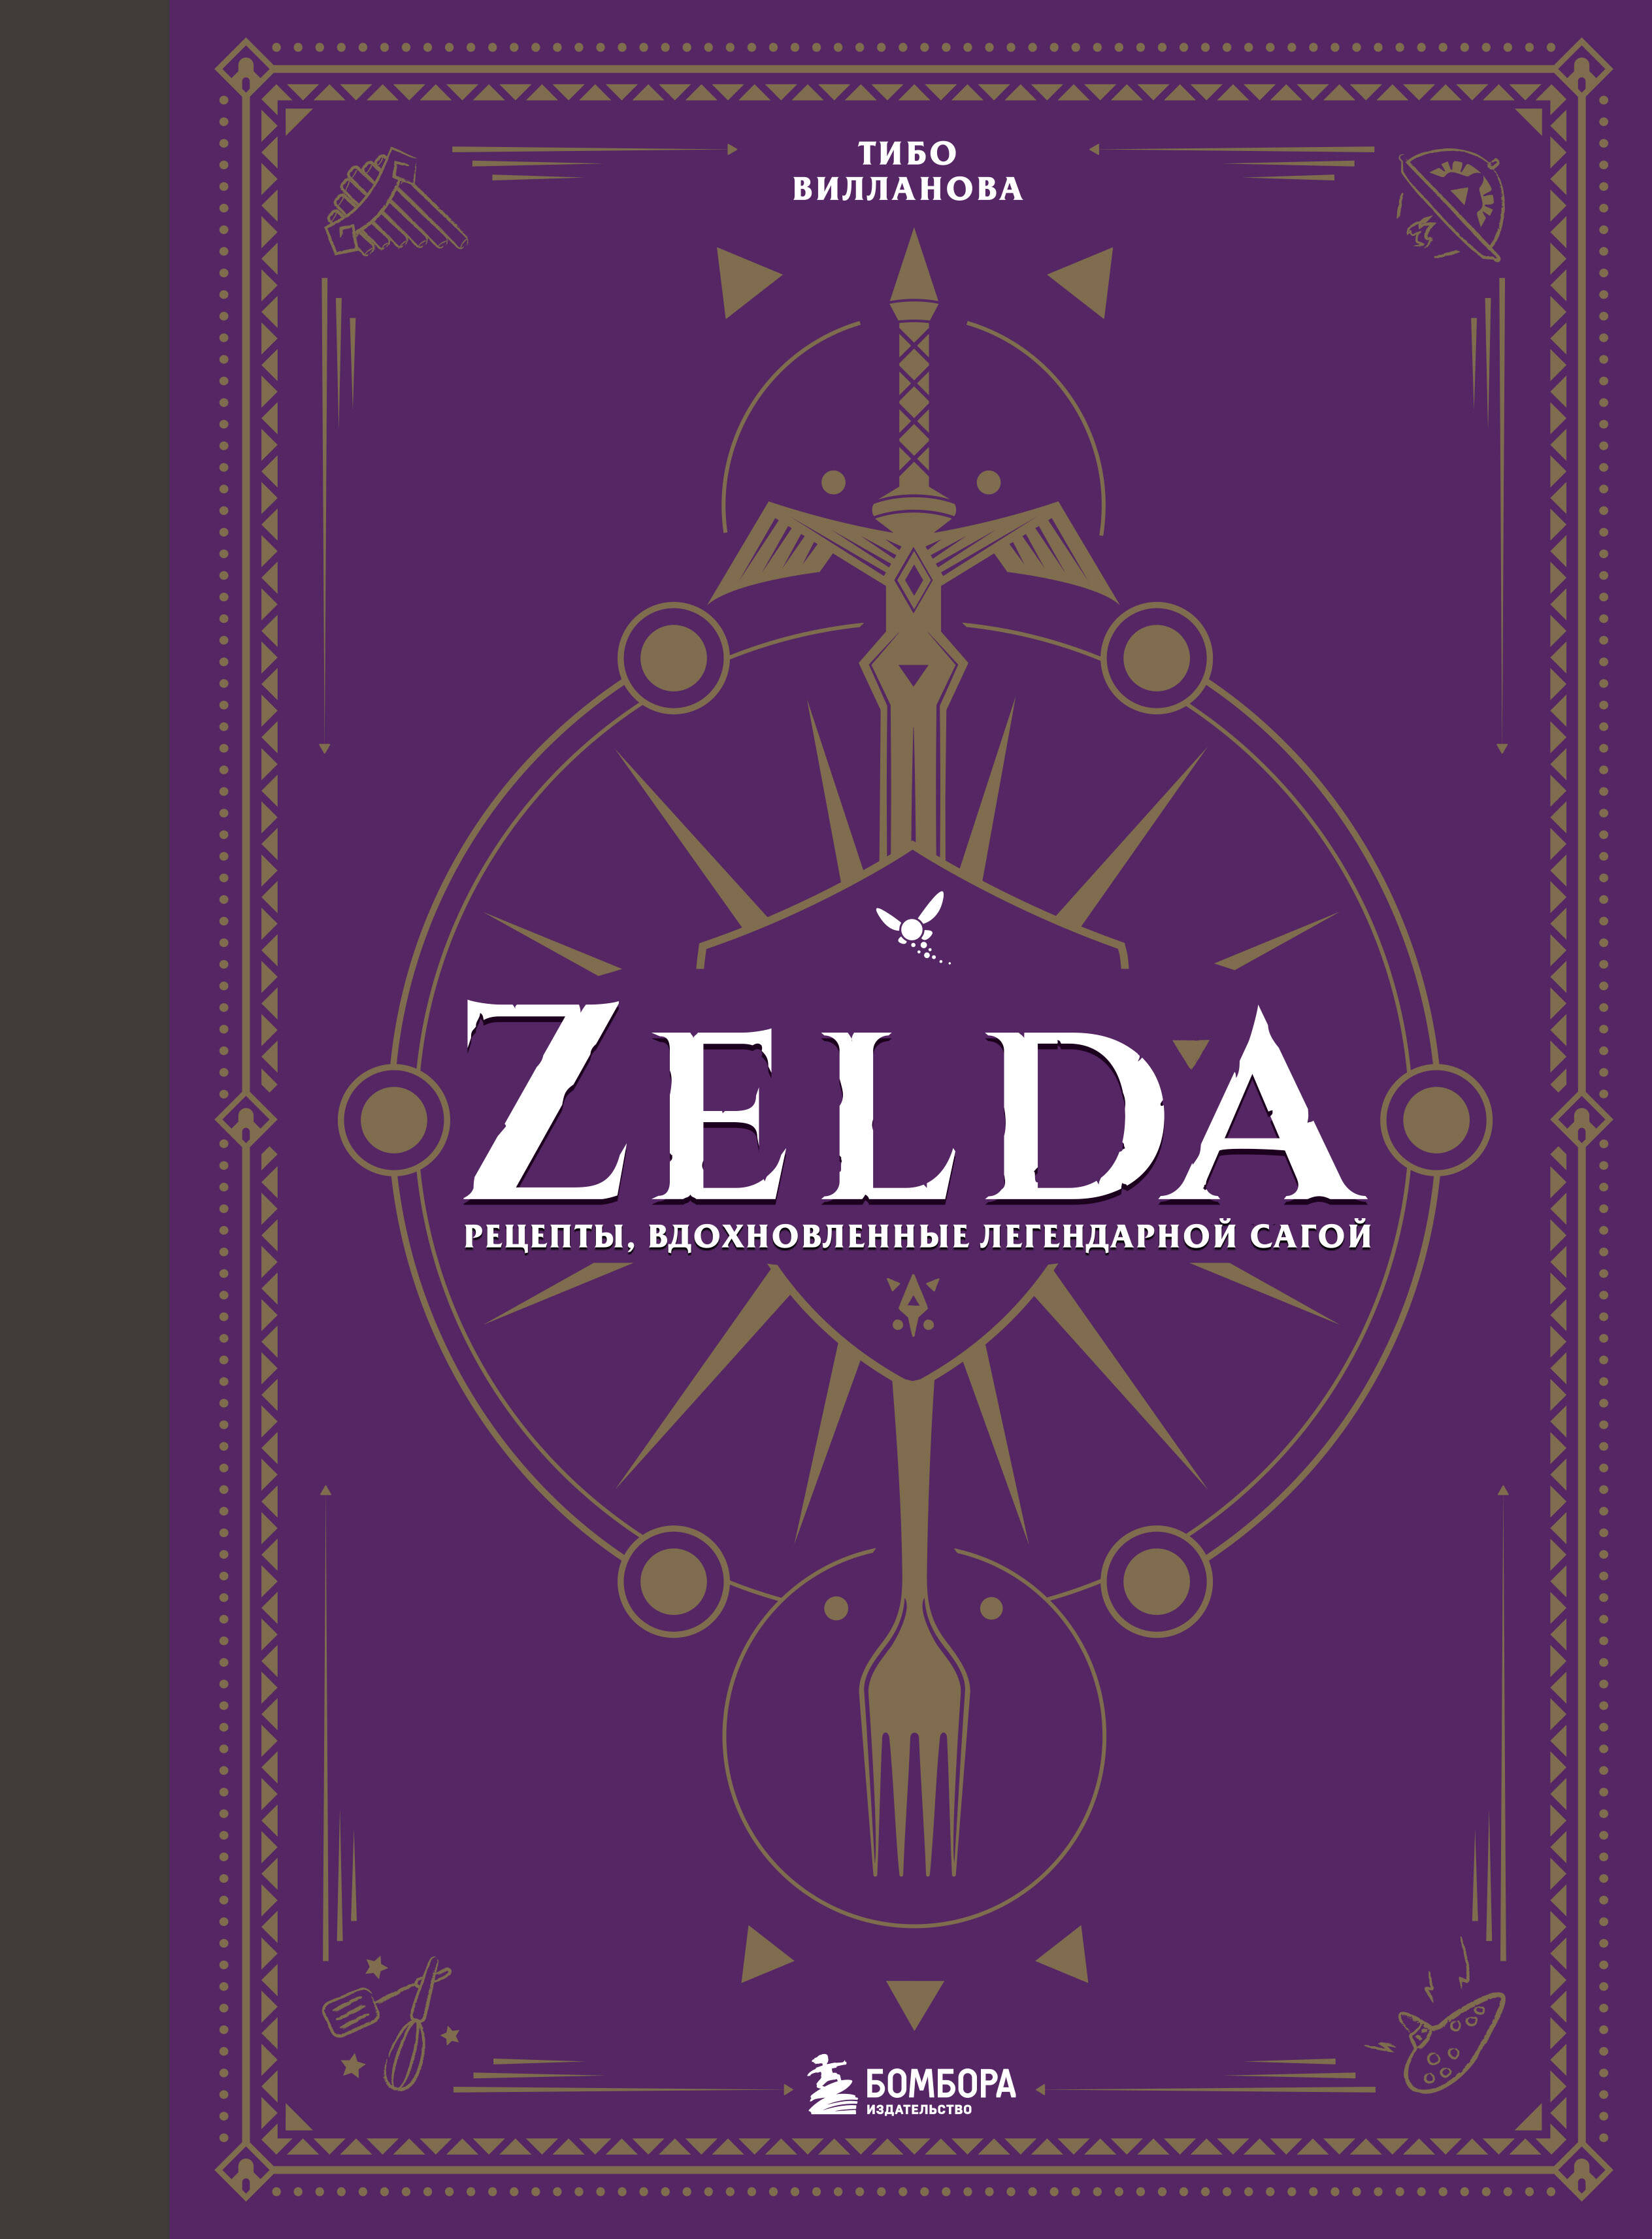 the legend of zelda ocarina of time 3d [3ds английская версия] Вилланова Тибо Zelda. Рецепты, вдохновленные легендарной сагой. Неофициальная кулинарная книга